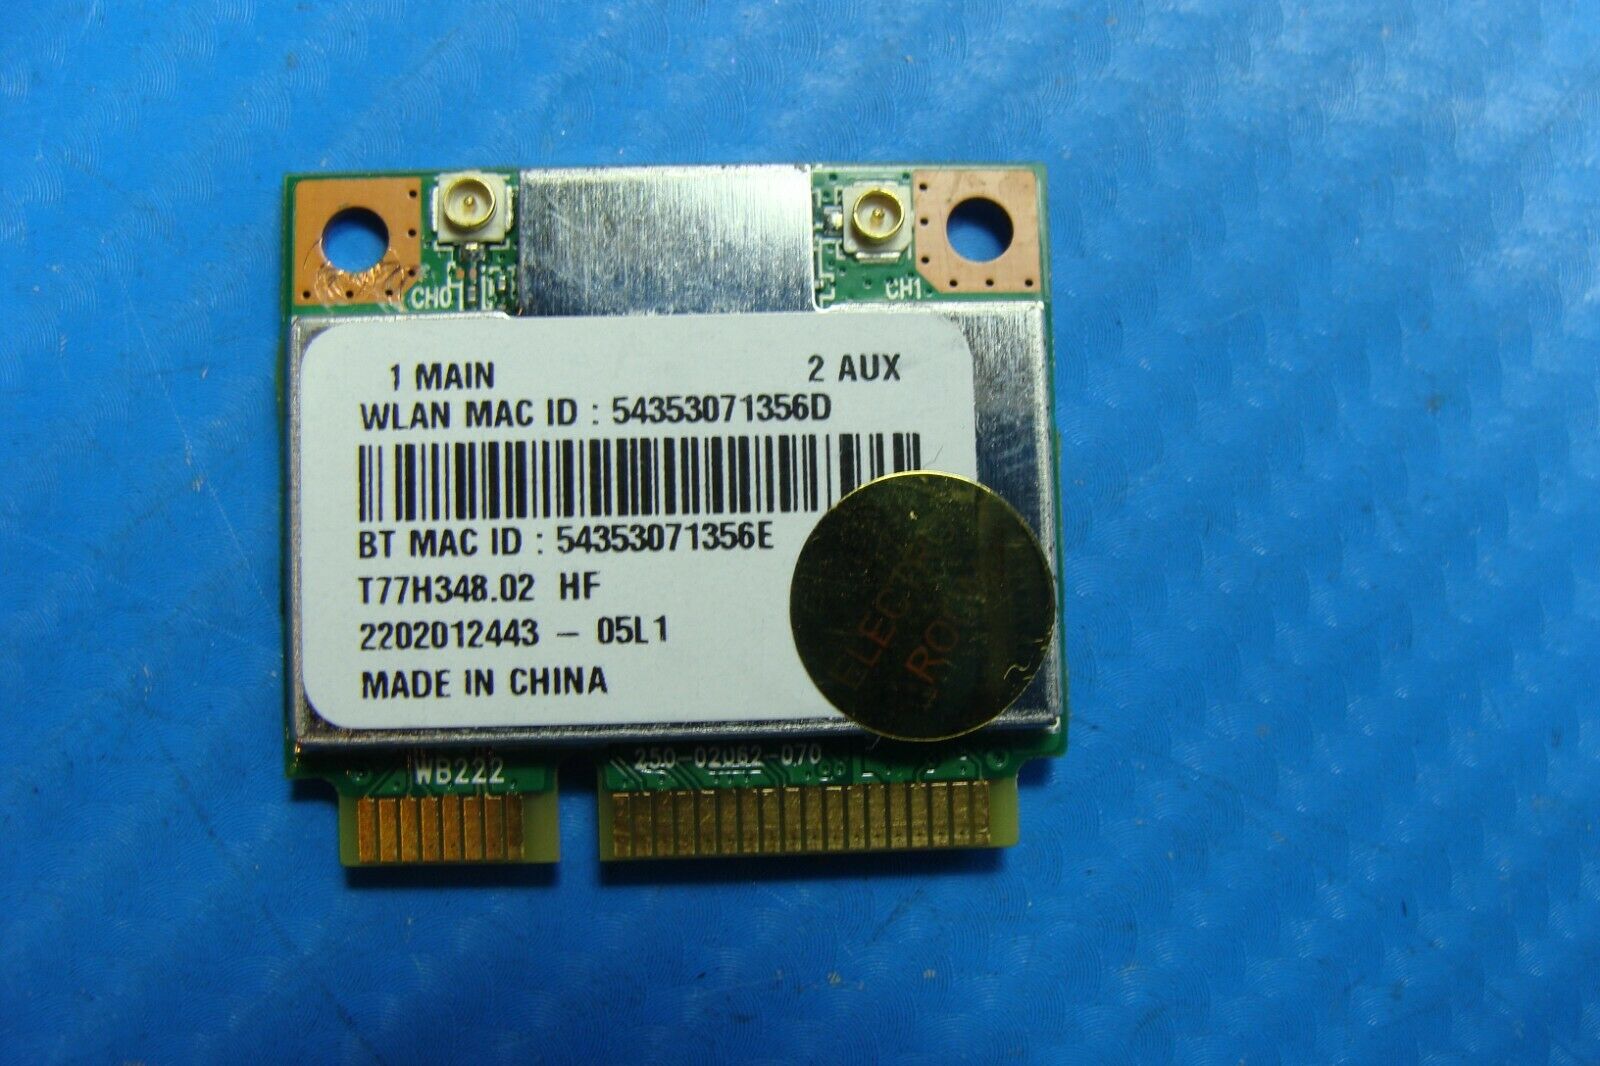 Acer Aspire V5-473P-6459 14